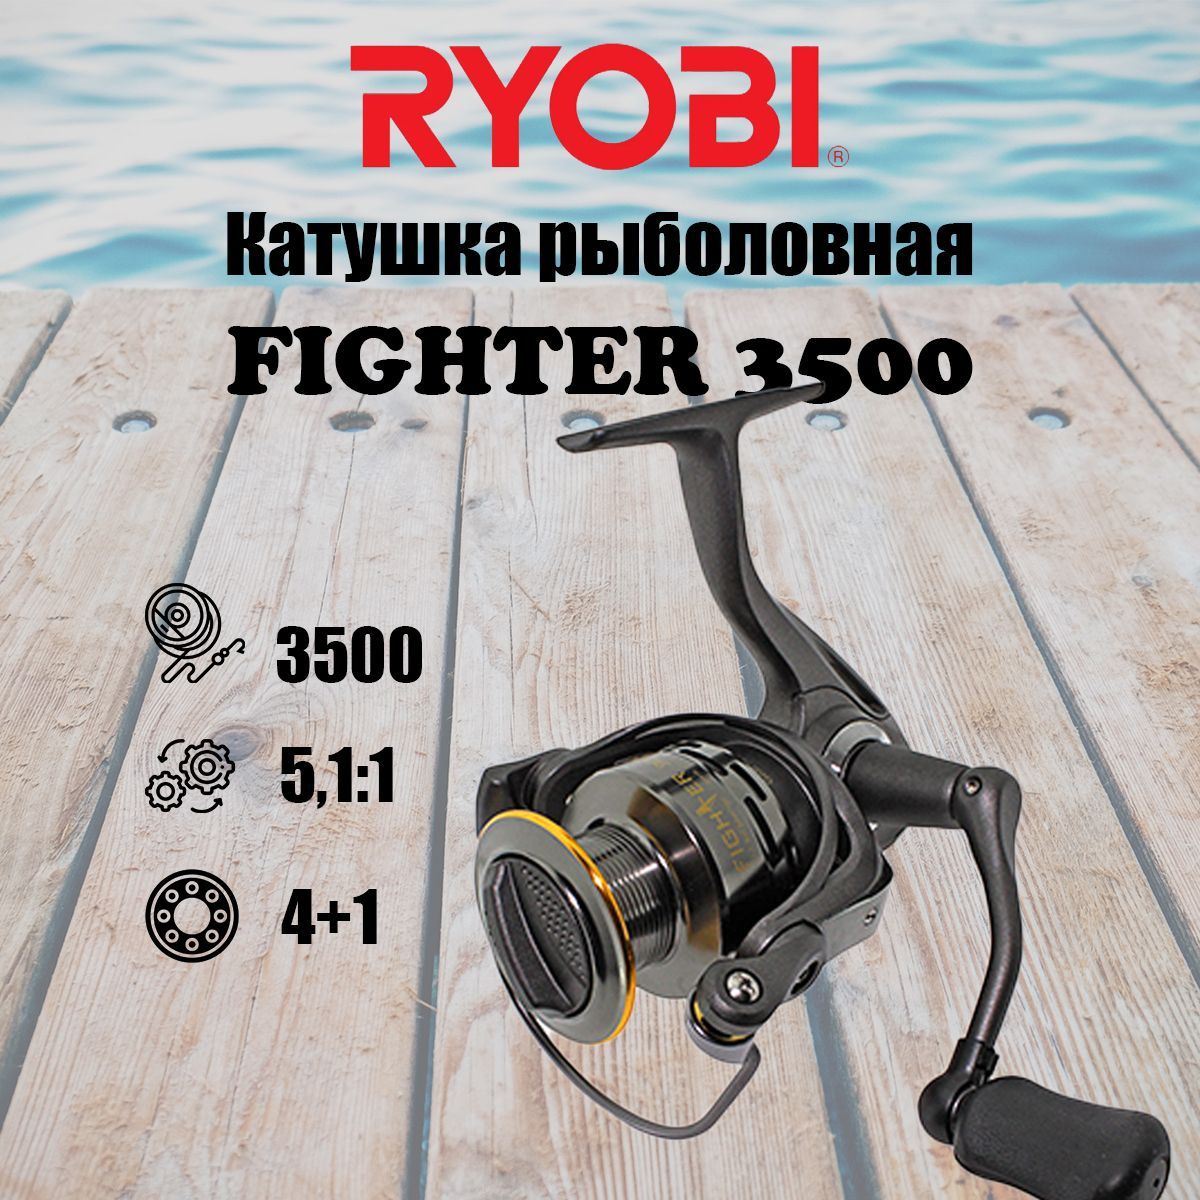 Катушка для рыбалки RYOBI FIGHTER 3500